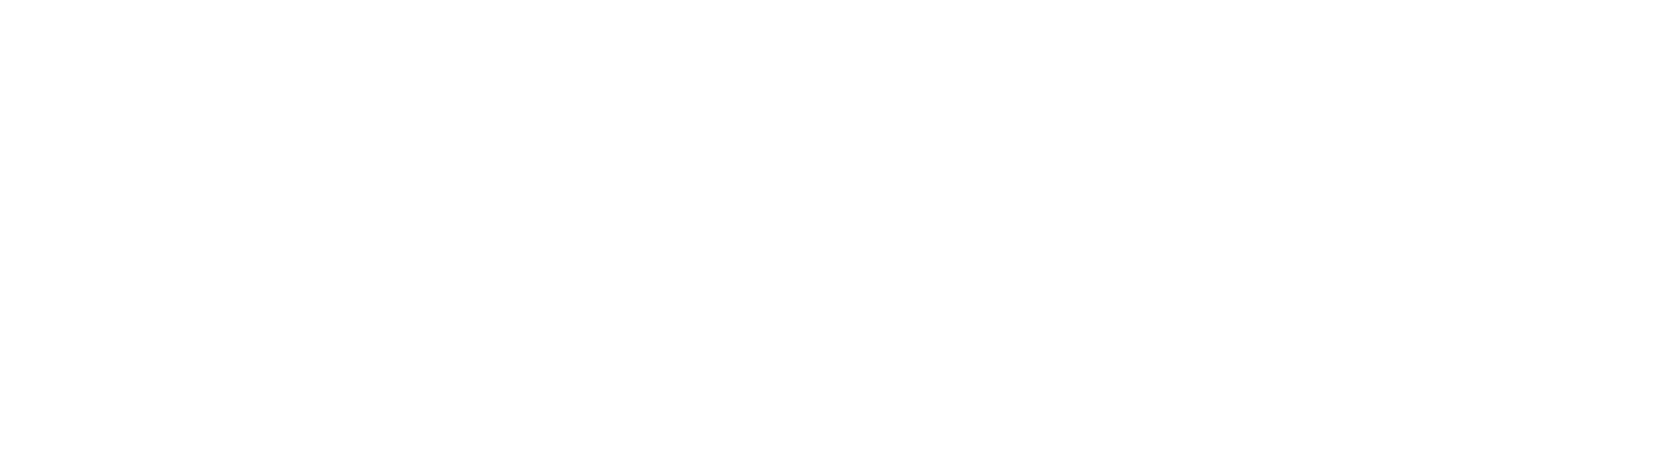 menger&meester, logo 